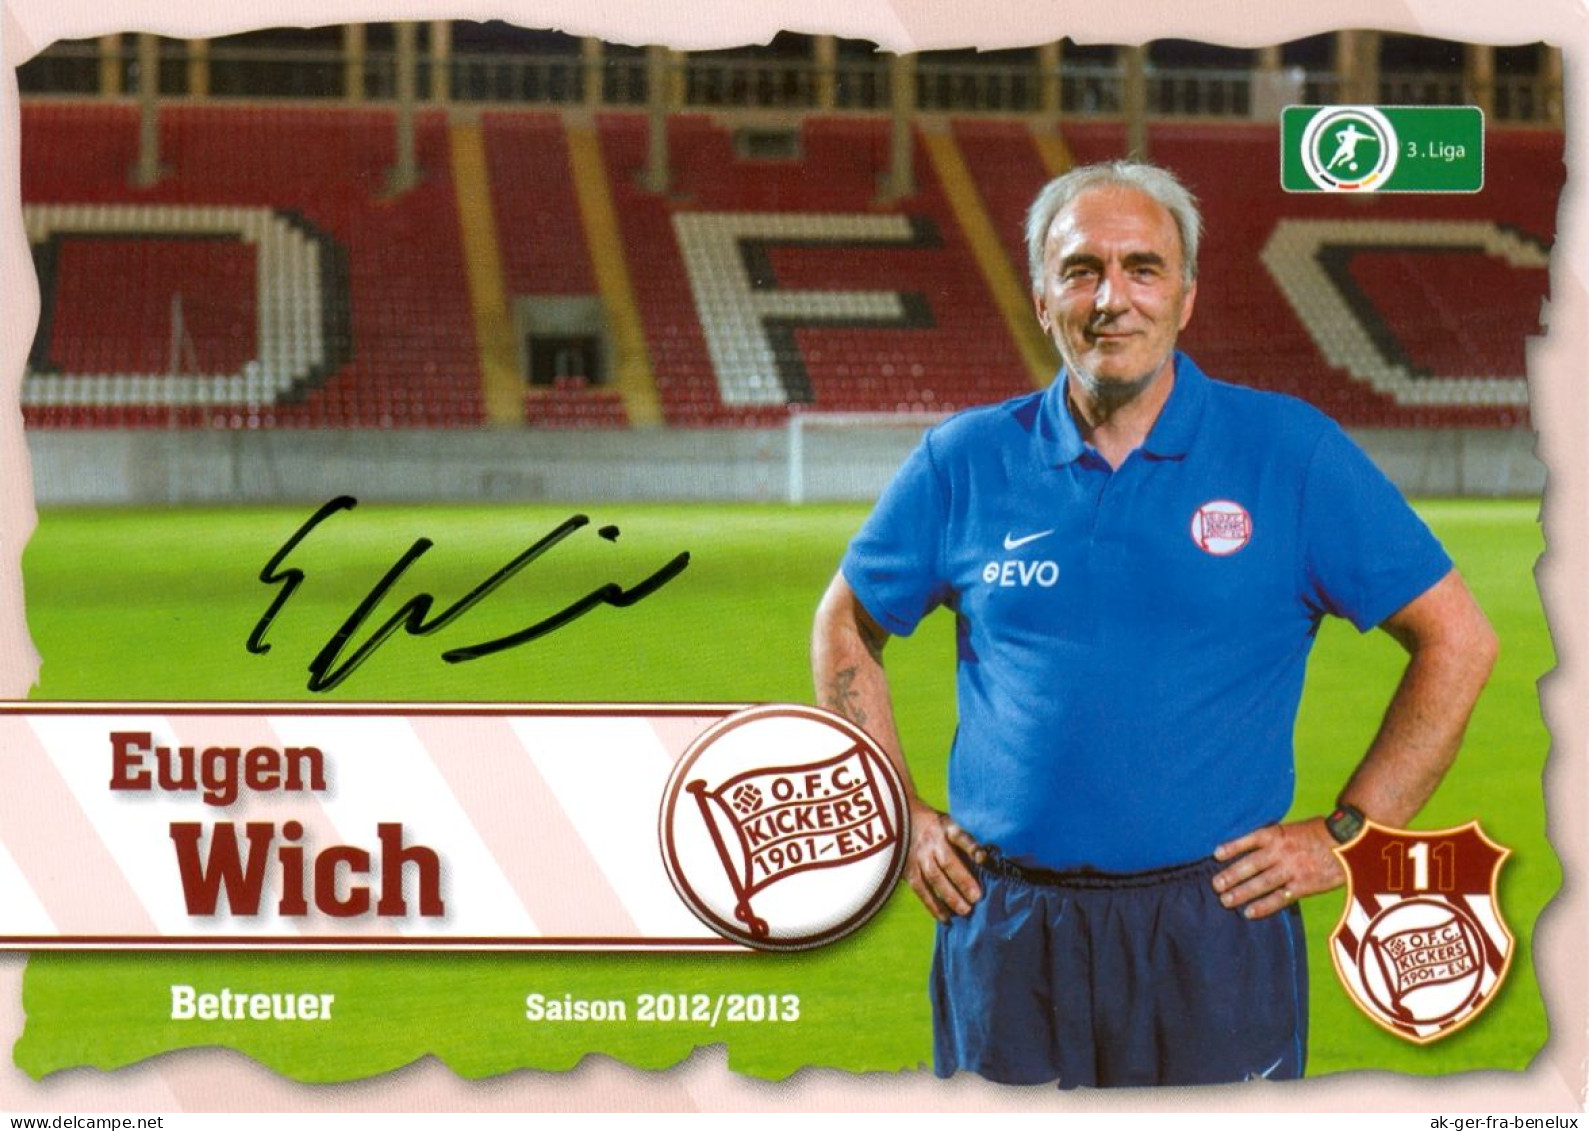 Fußball-Autogrammkarte AK Eugen Wich Offenbacher Kickers 12-13 OFC Offenbach Am Main Hessen Autogramm Fußball Football - Autogramme